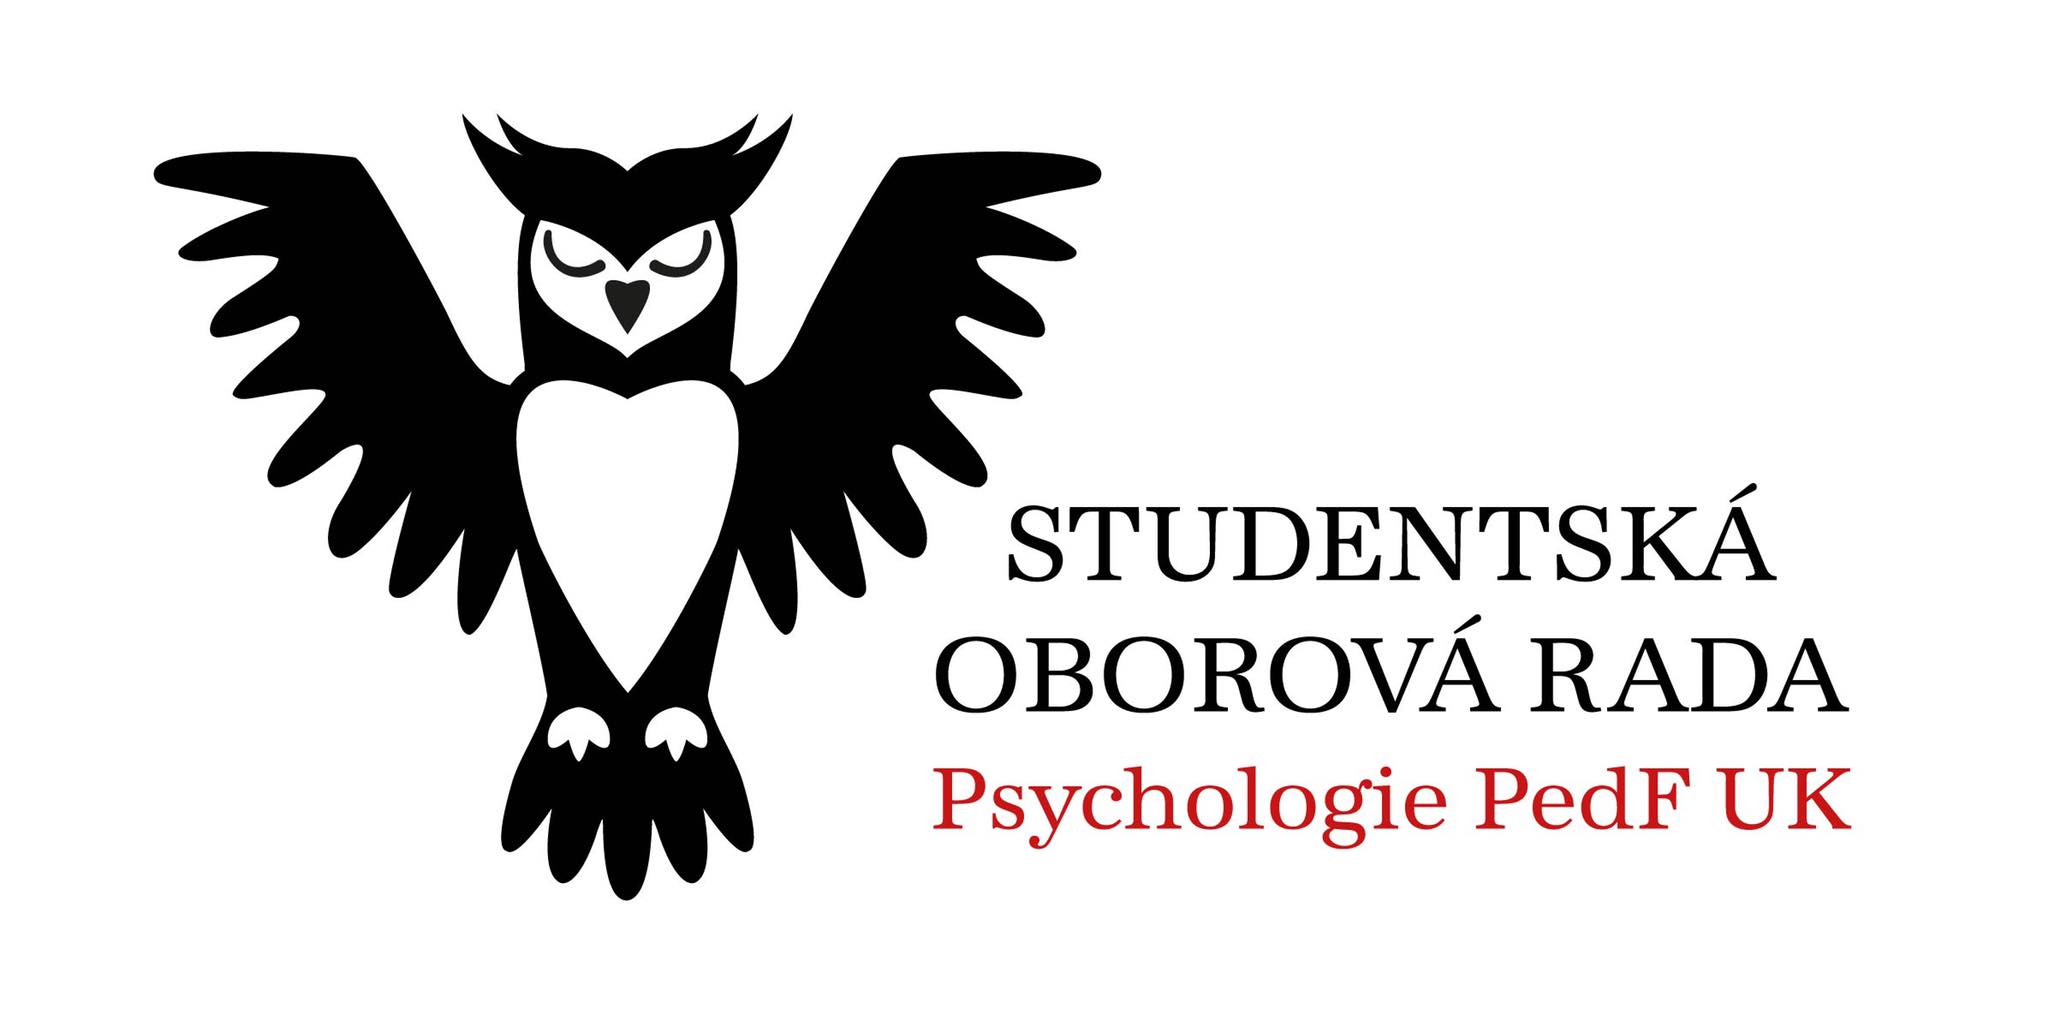 Studentská rada psychologie